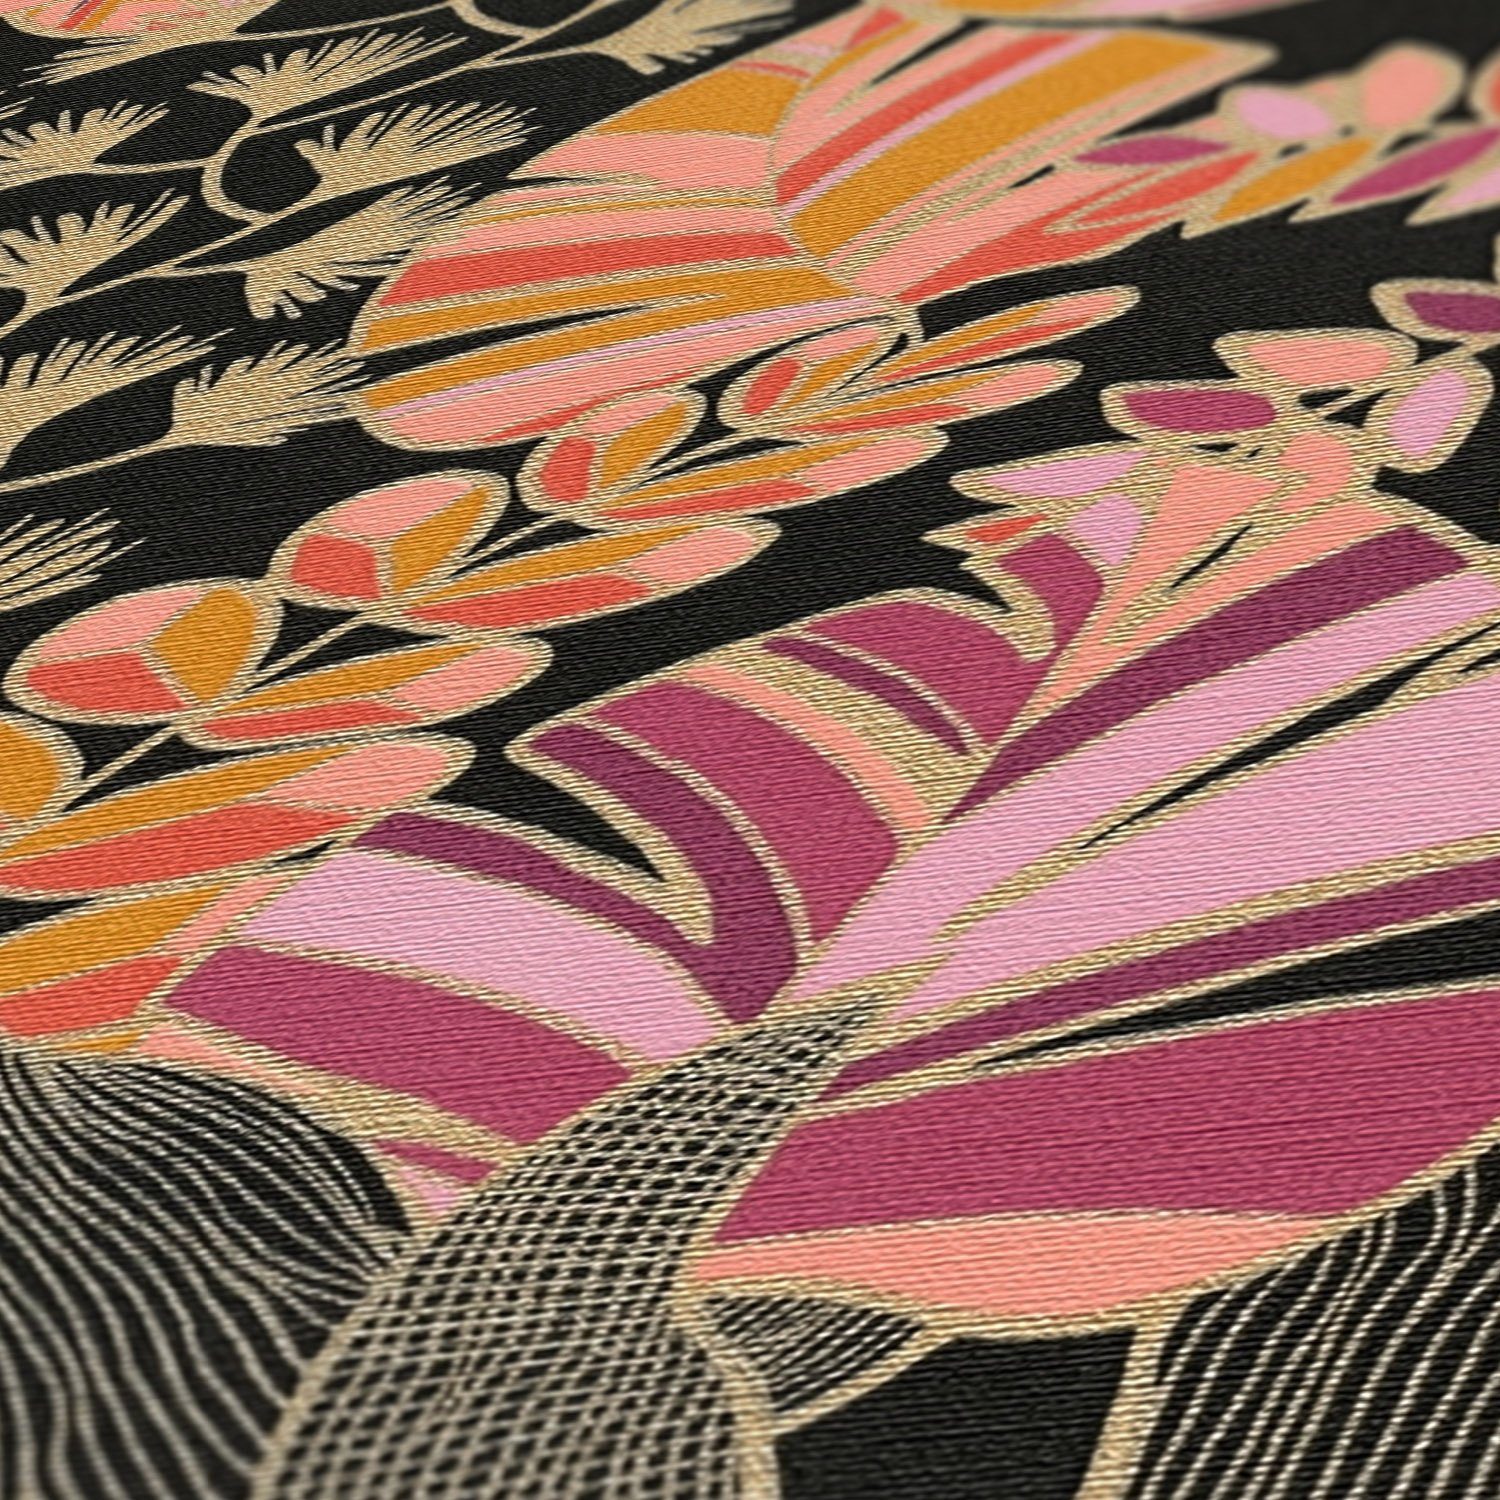 mit Tapete A.S. bunt,orange,pink Tapete Blättern Création (1 Antigua Bunt St), geprägt, Retro Vliestapete matt, Pflanzen Floral,